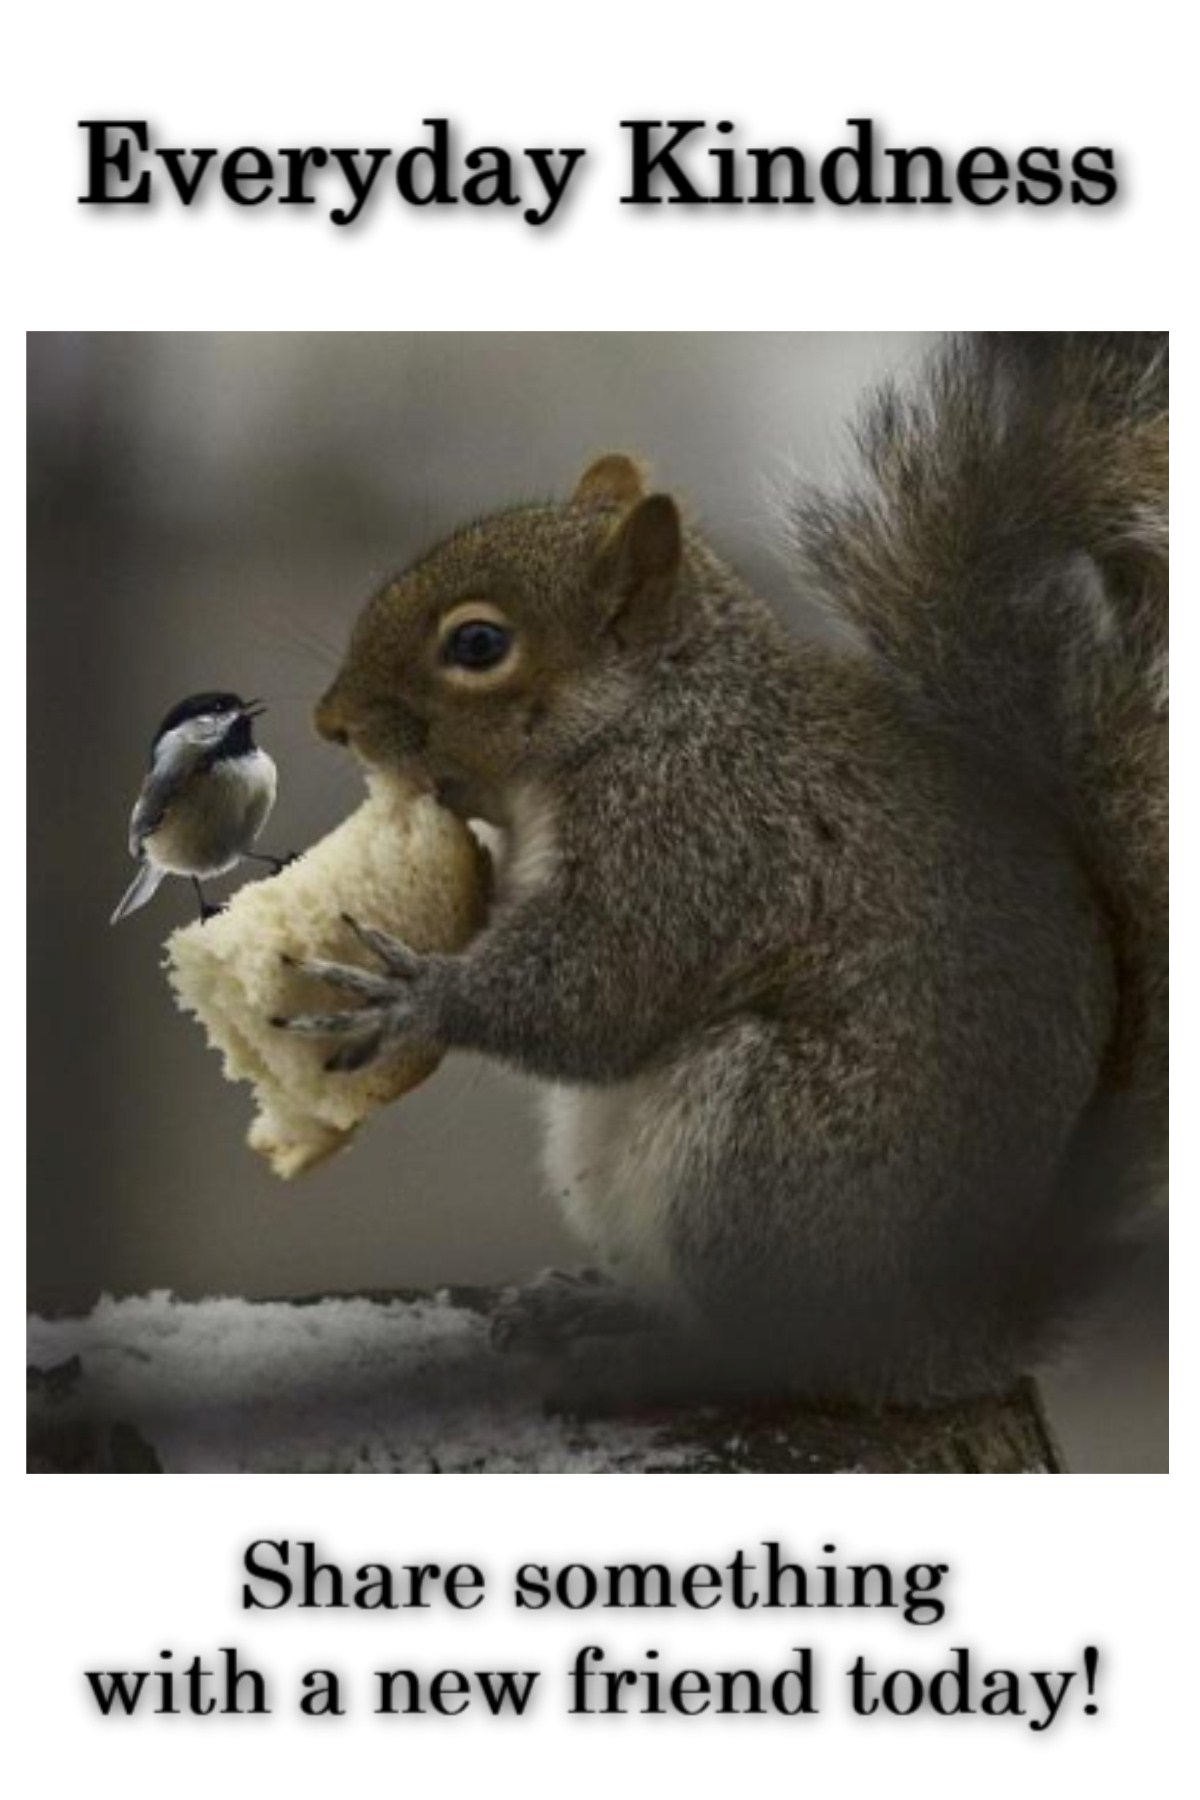 kindness between squirrel & bird